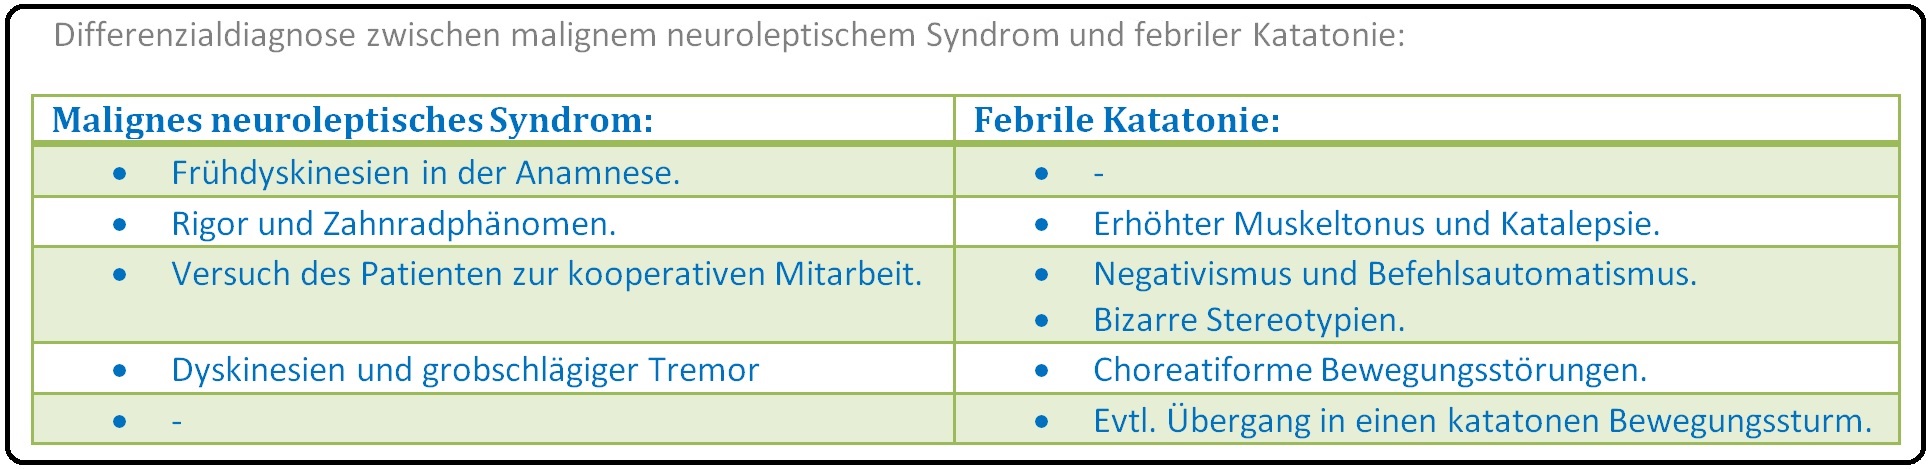 627 Differenzialdiagnose zwischen malignem neuroleptischem Syndrom und febriler Katatonie